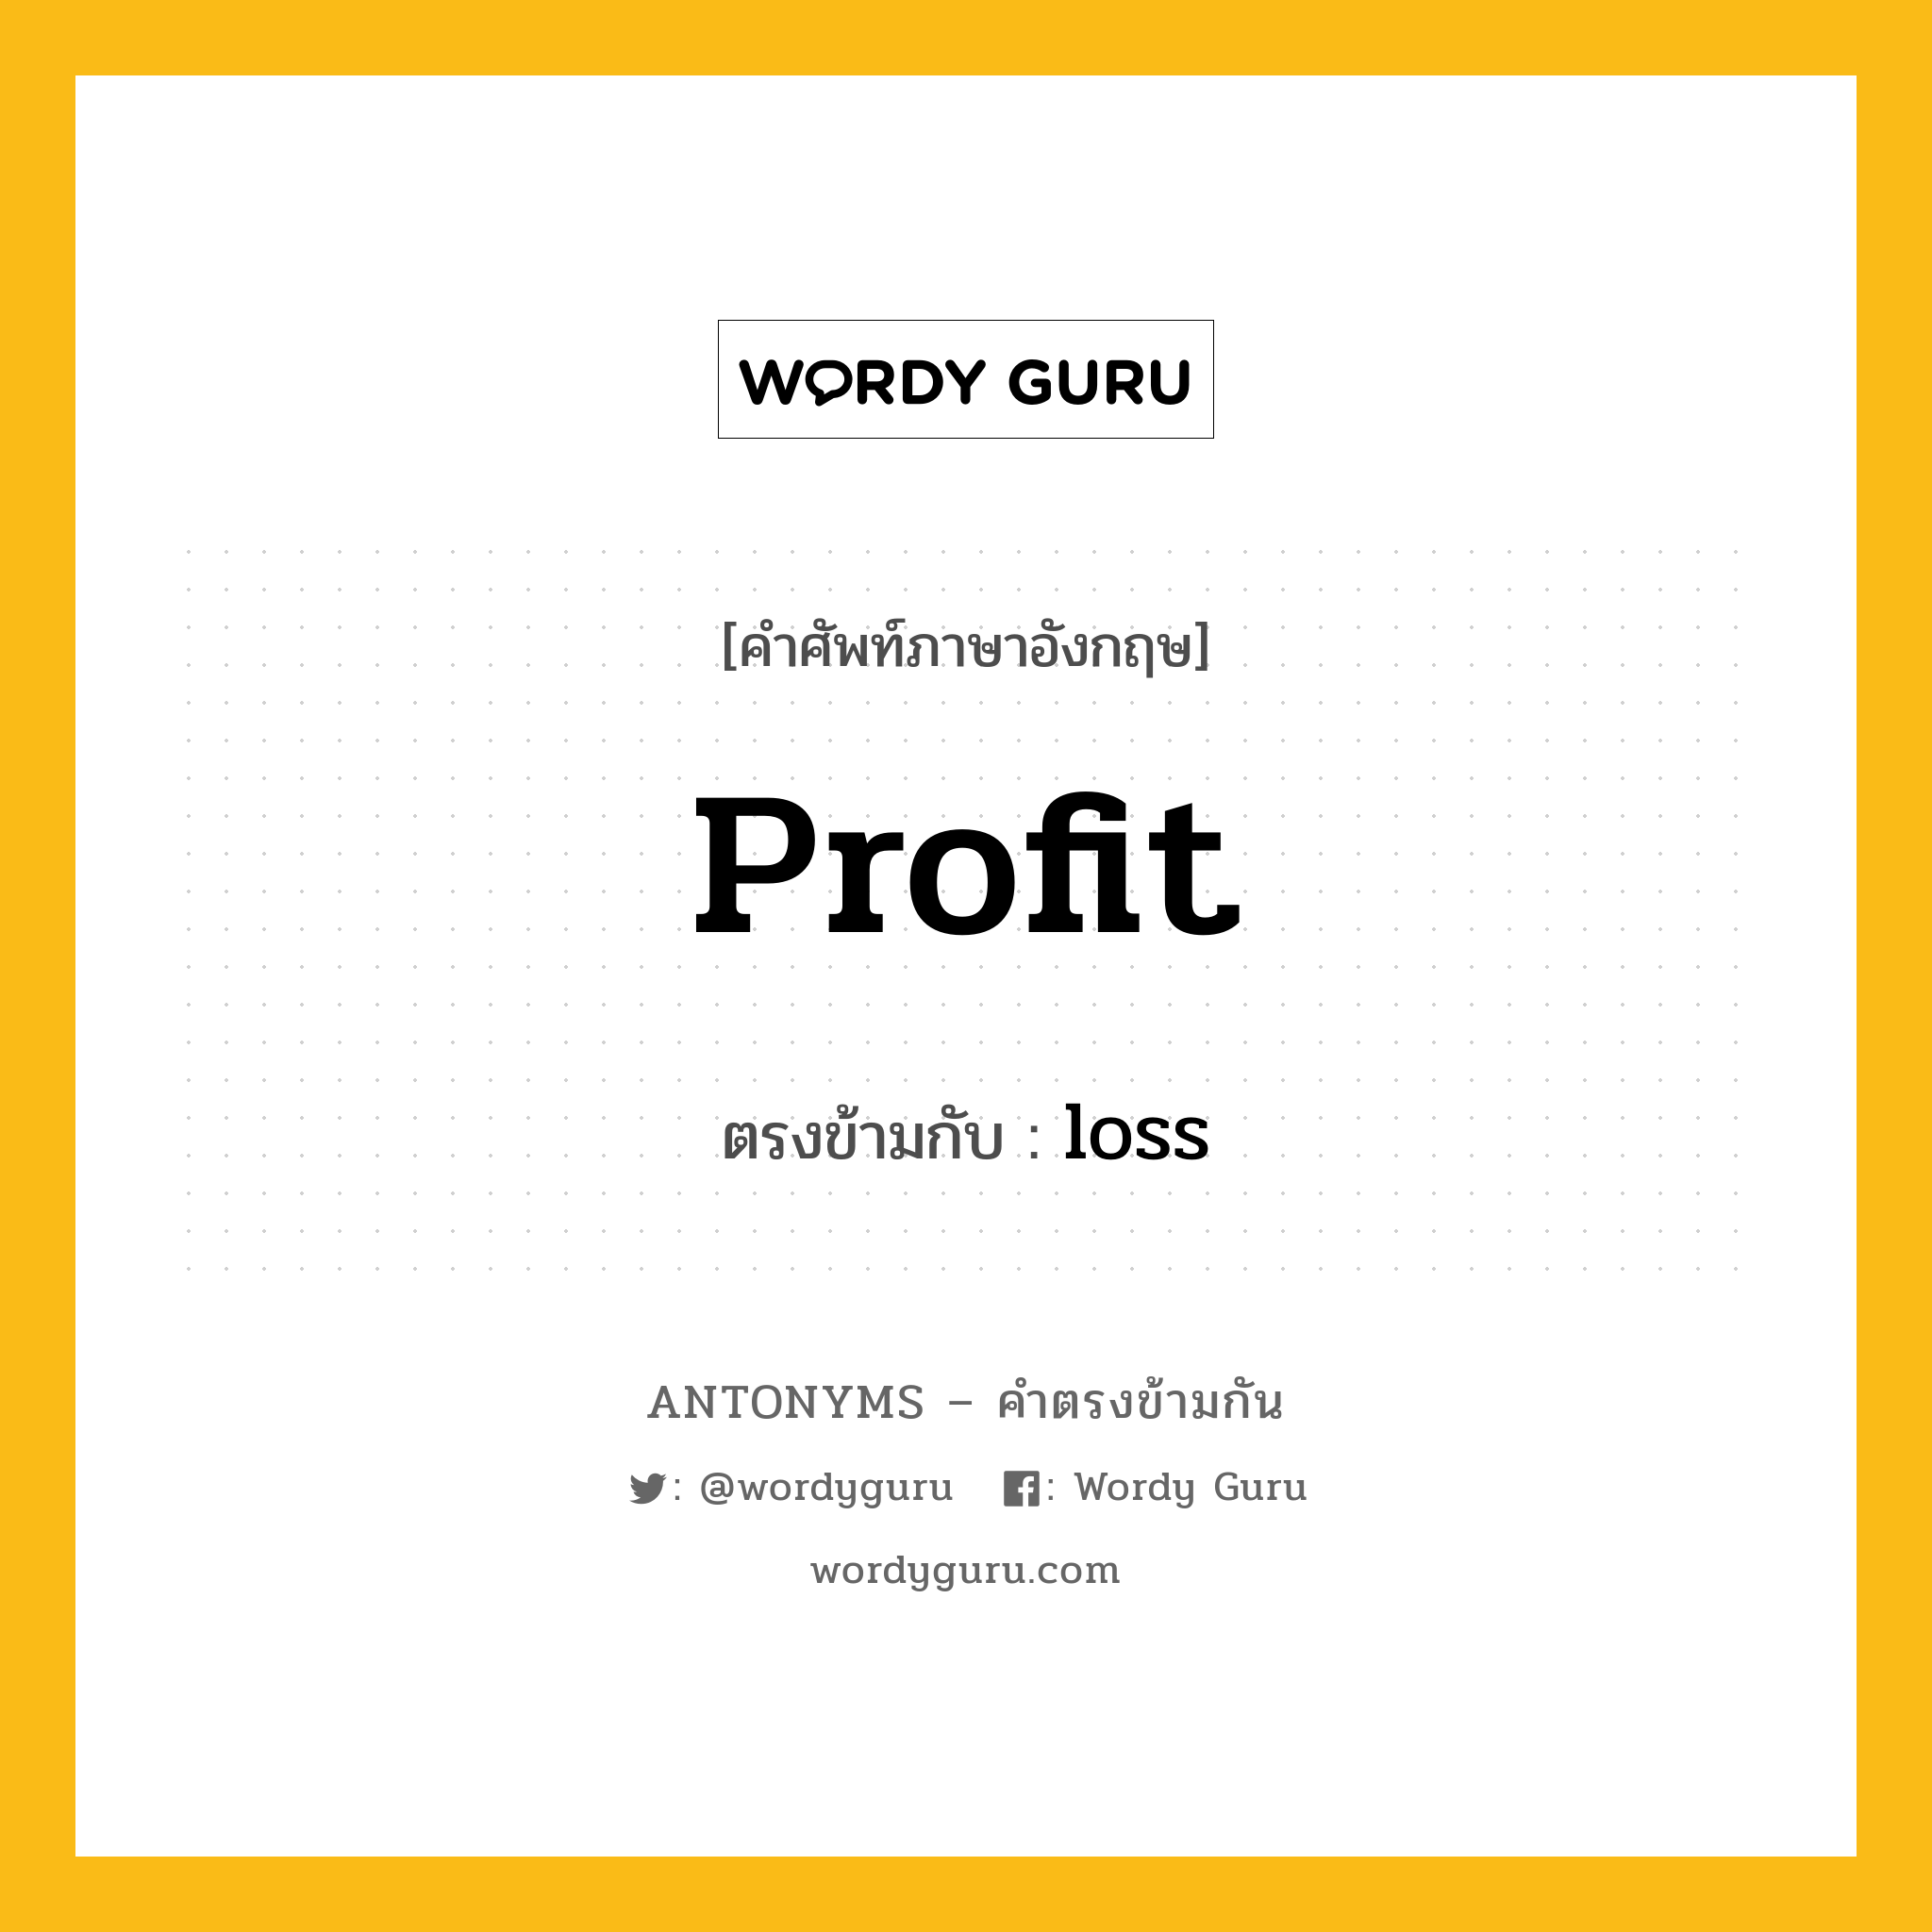 profit เป็นคำตรงข้ามกับคำไหนบ้าง?, คำศัพท์ภาษาอังกฤษที่มีความหมายตรงข้ามกัน profit ตรงข้ามกับ loss หมวด loss